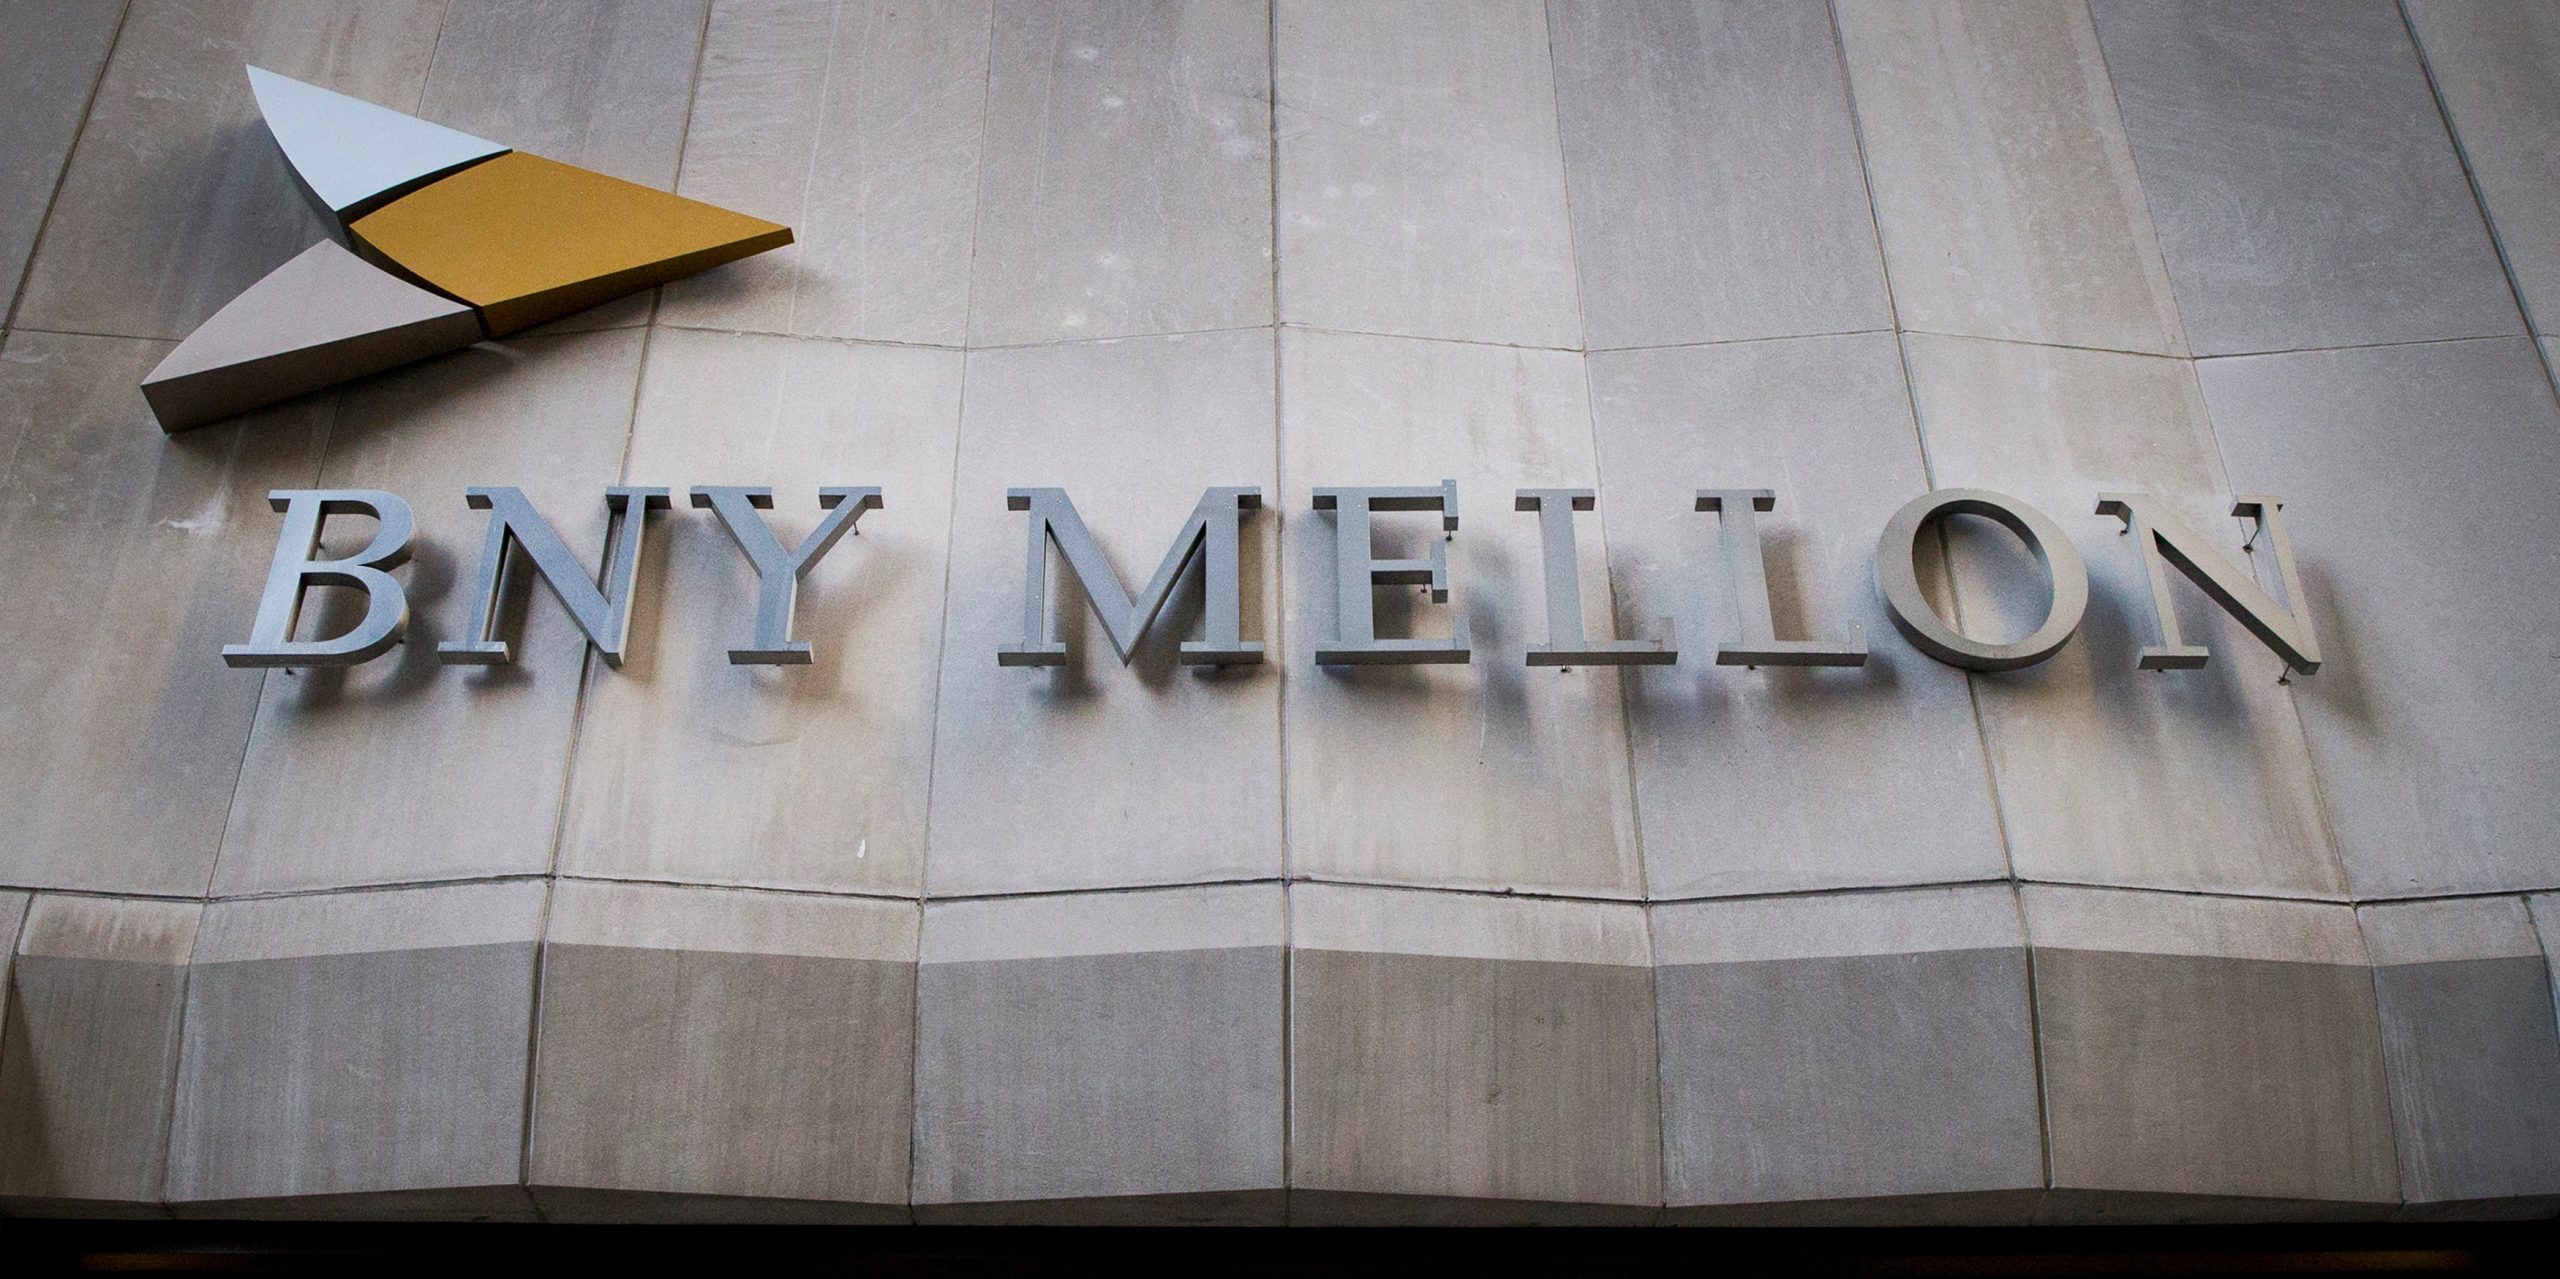 BNY Mellon, Bank of New York Mellon